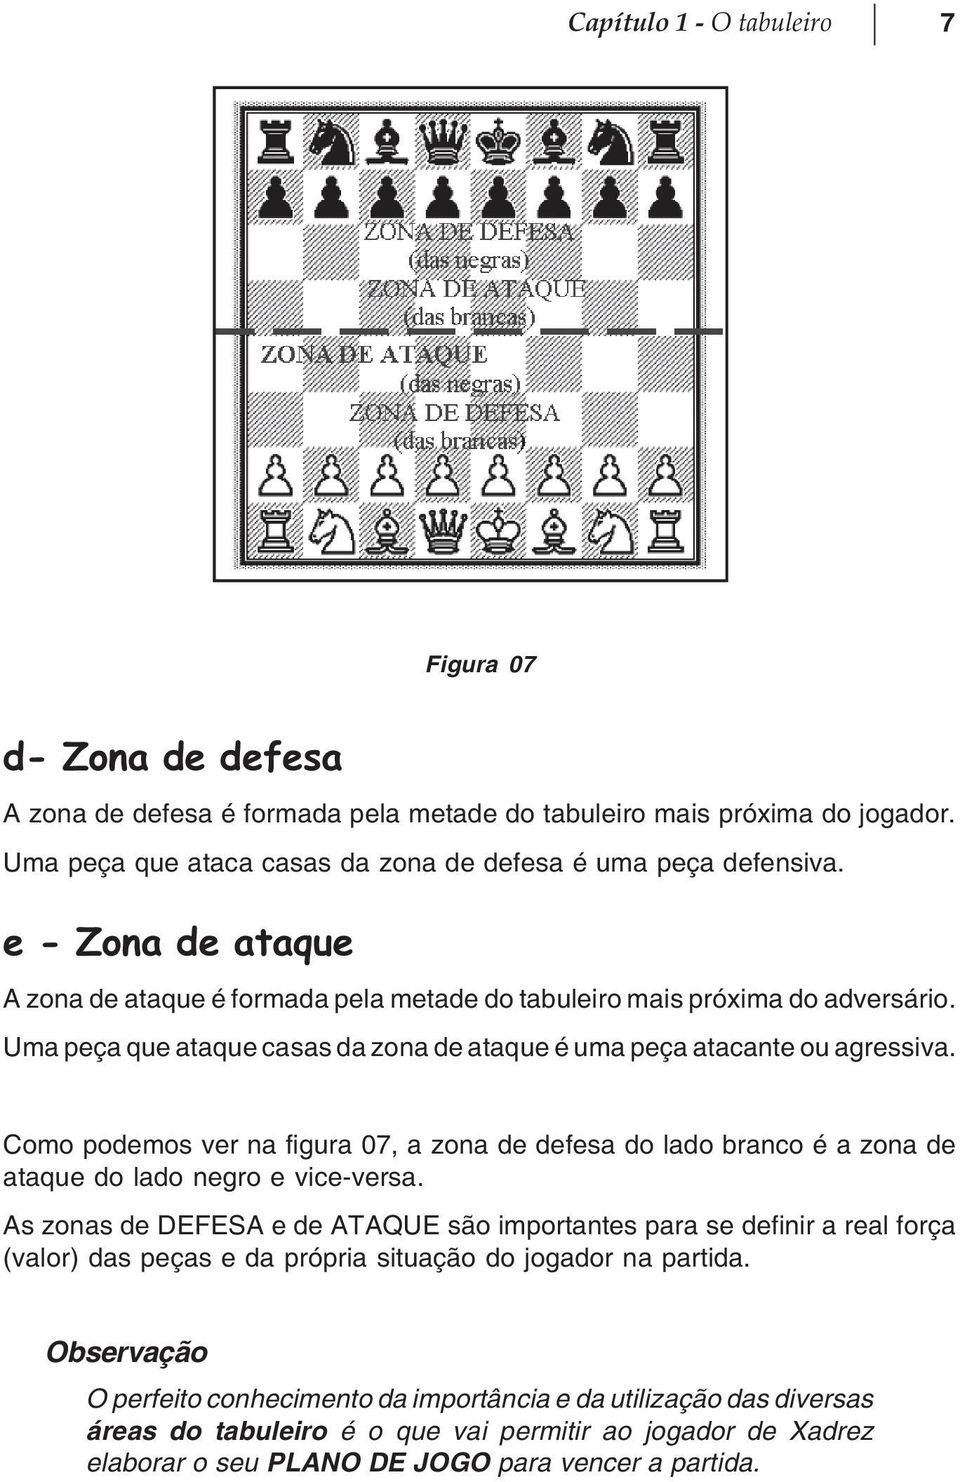 Como podemos ver na figura 07, a zona de defesa do lado branco é a zona de ataque do lado negro e vice-versa.